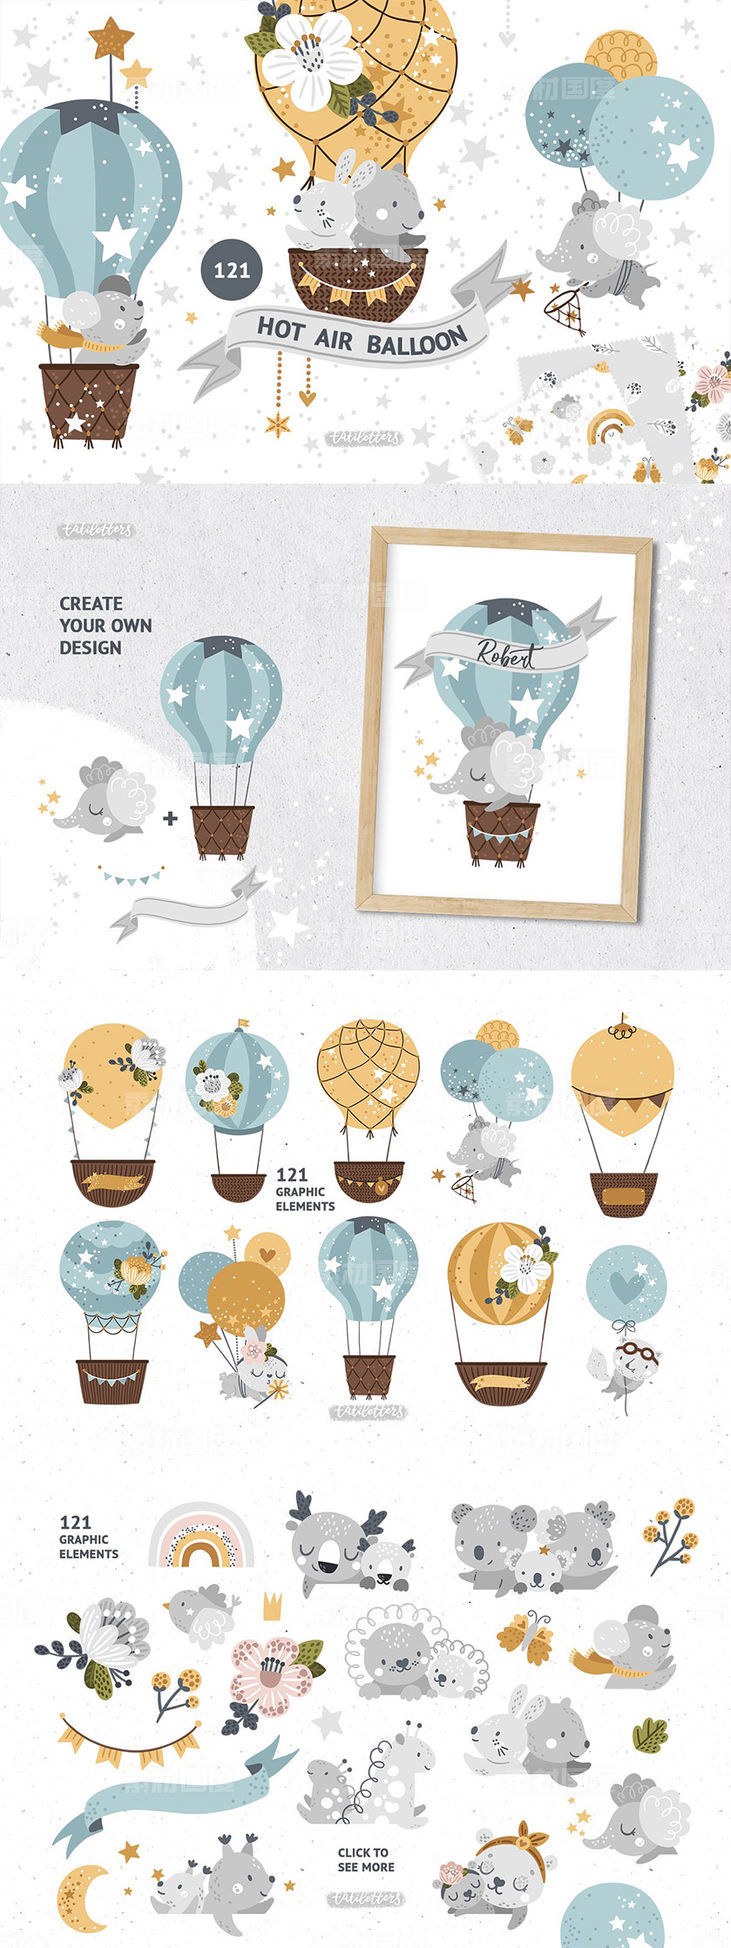 动物热气球梦幻插画图案下载[EPS]